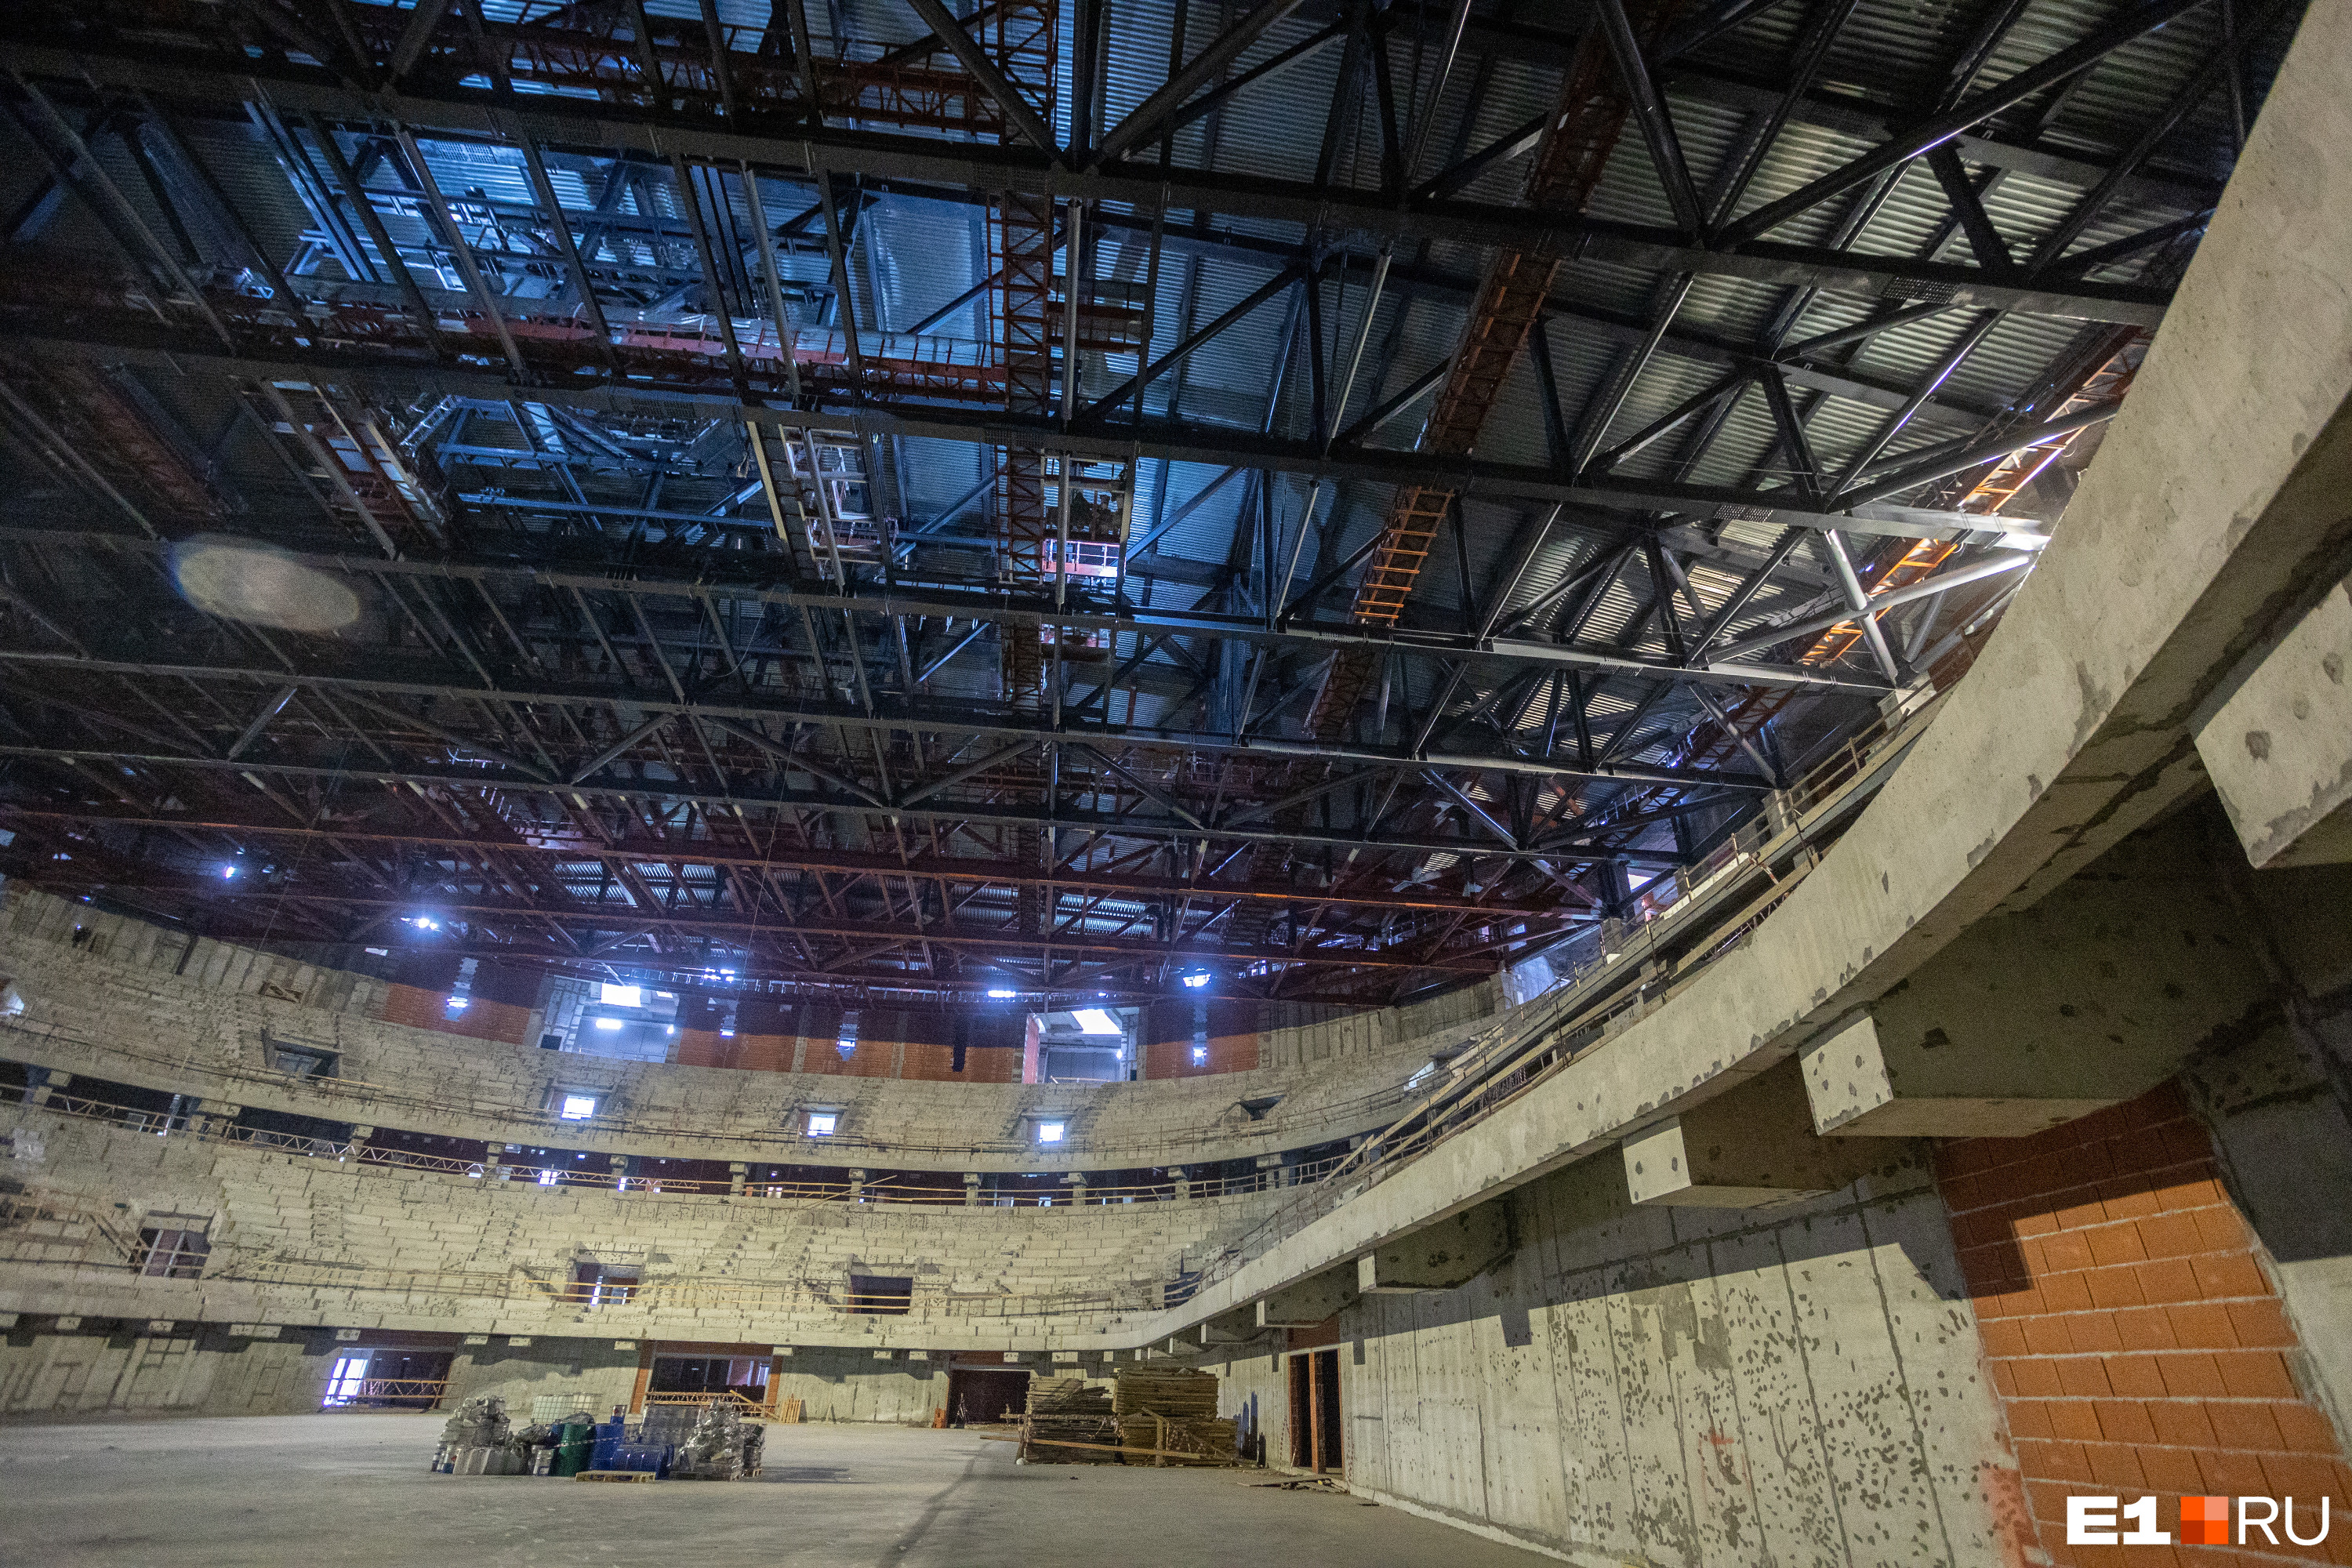 Свет под крышей — это фонарики рабочих, которые сейчас покрывают конструкции защитными материалами